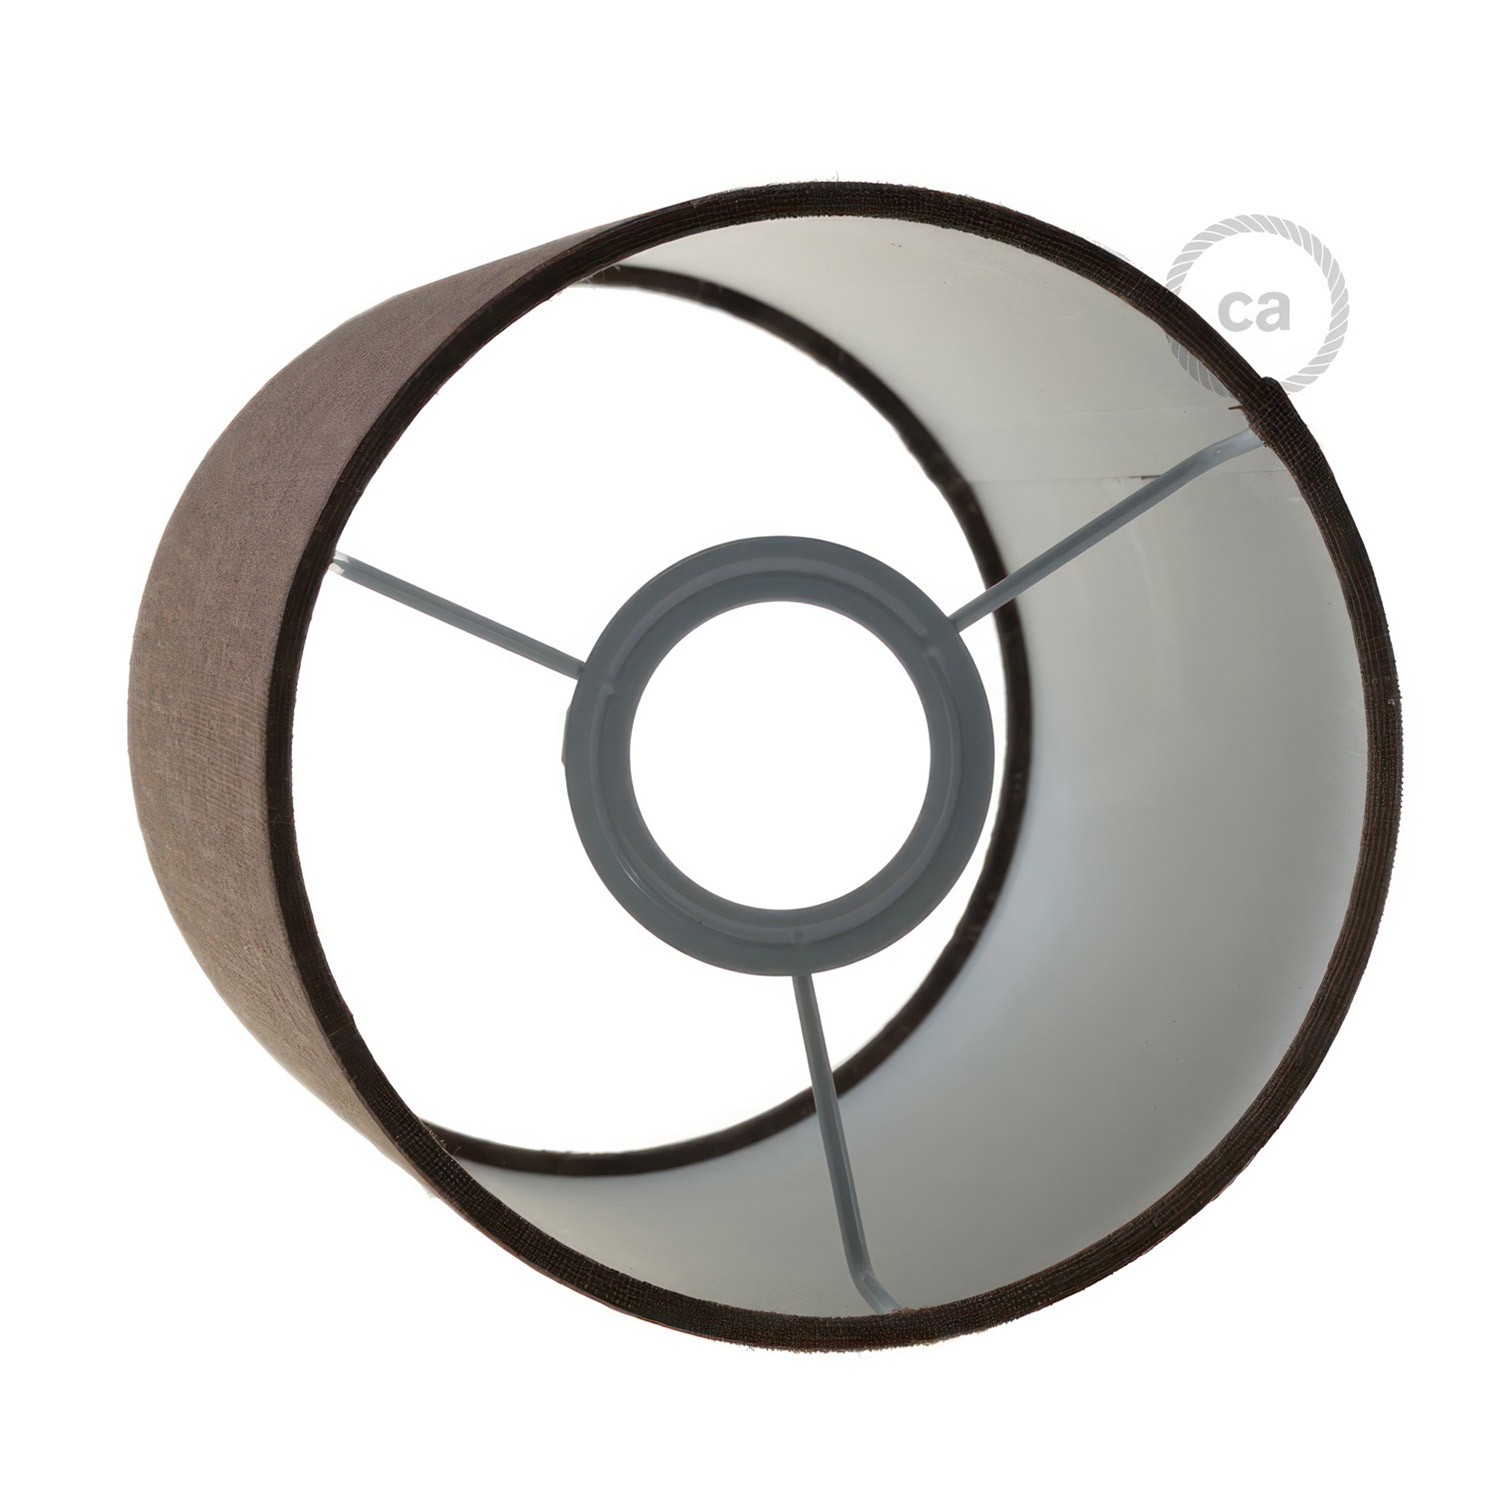 Fermaluce Metal med Cilindro lampskärm, infälld vägg- eller taklampa